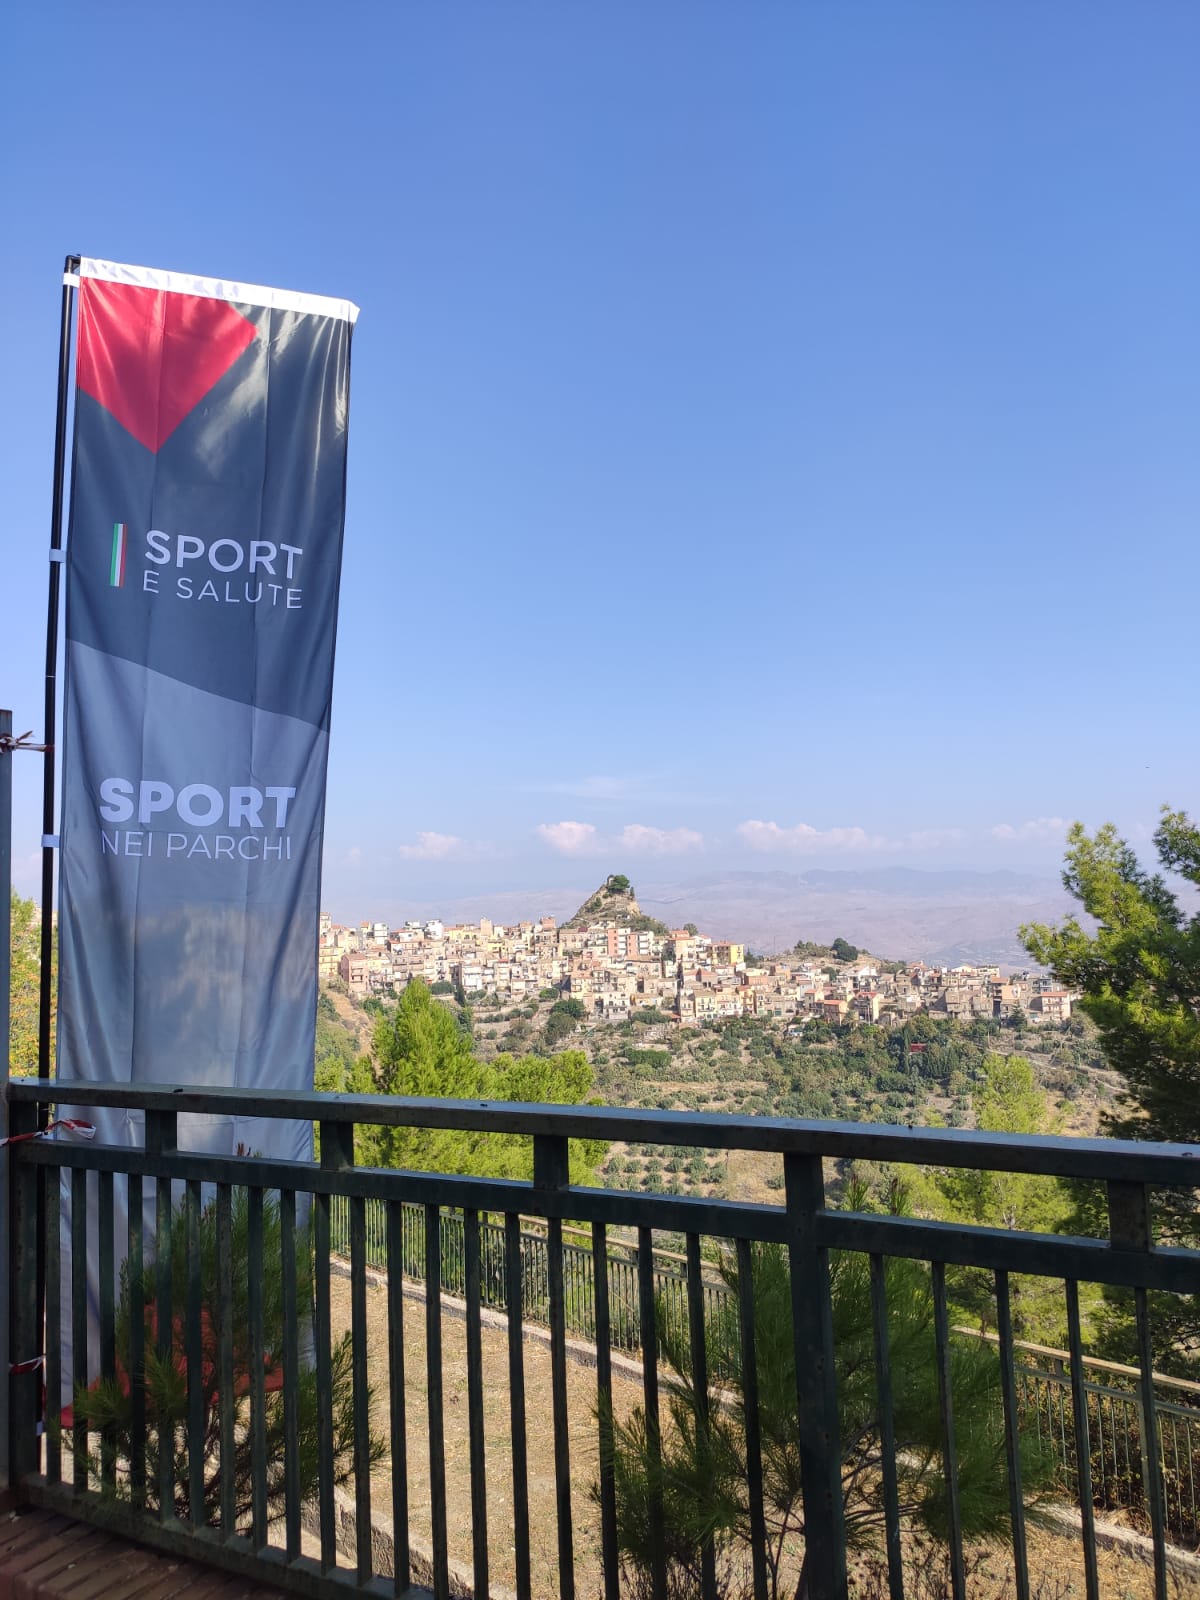 La bandiera del progetto "Sport nei parchi" e lo sfondo del monte Calvario a Centuripe 